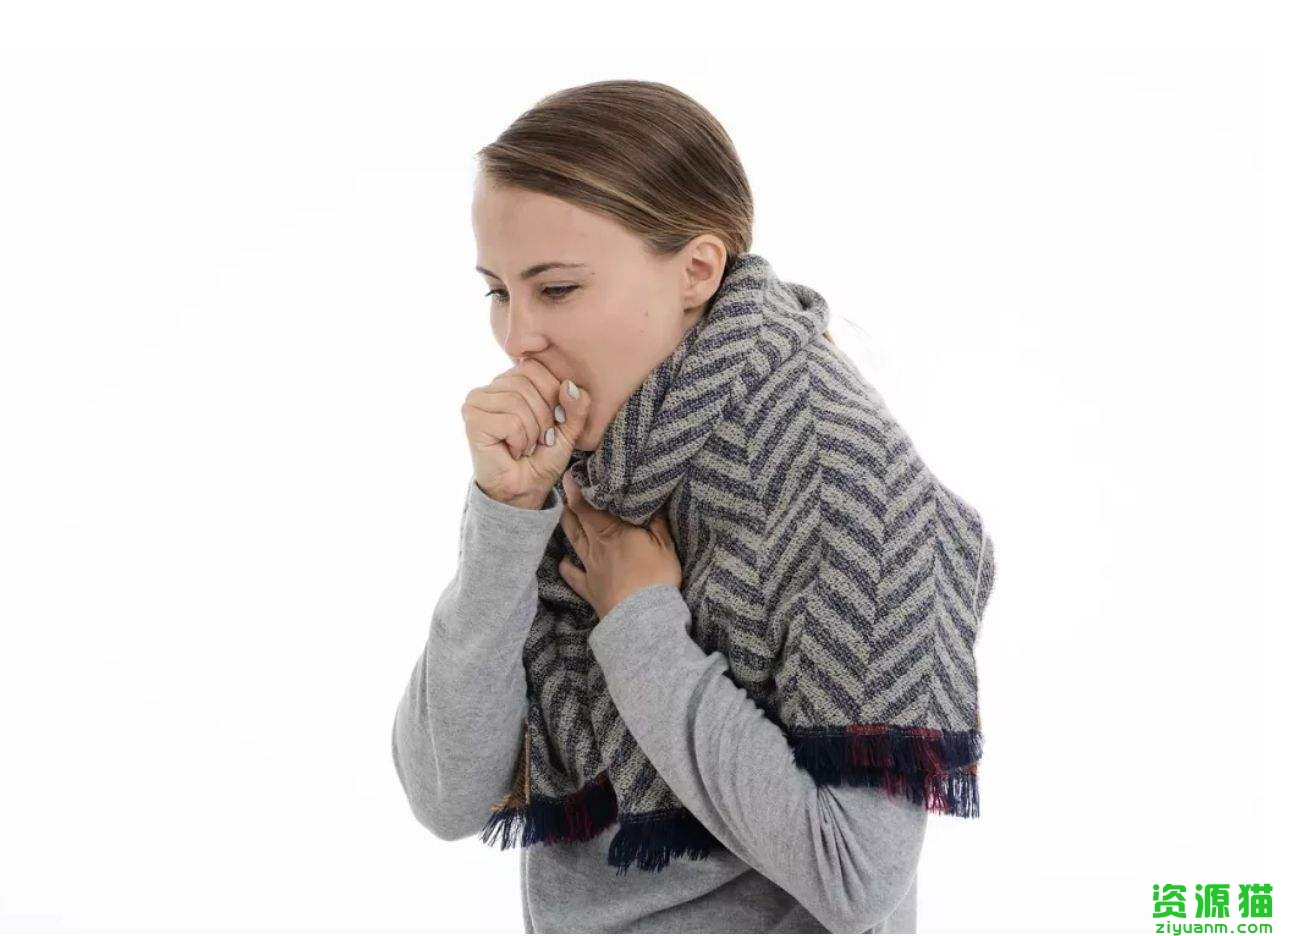 总想咳嗽是什么原因